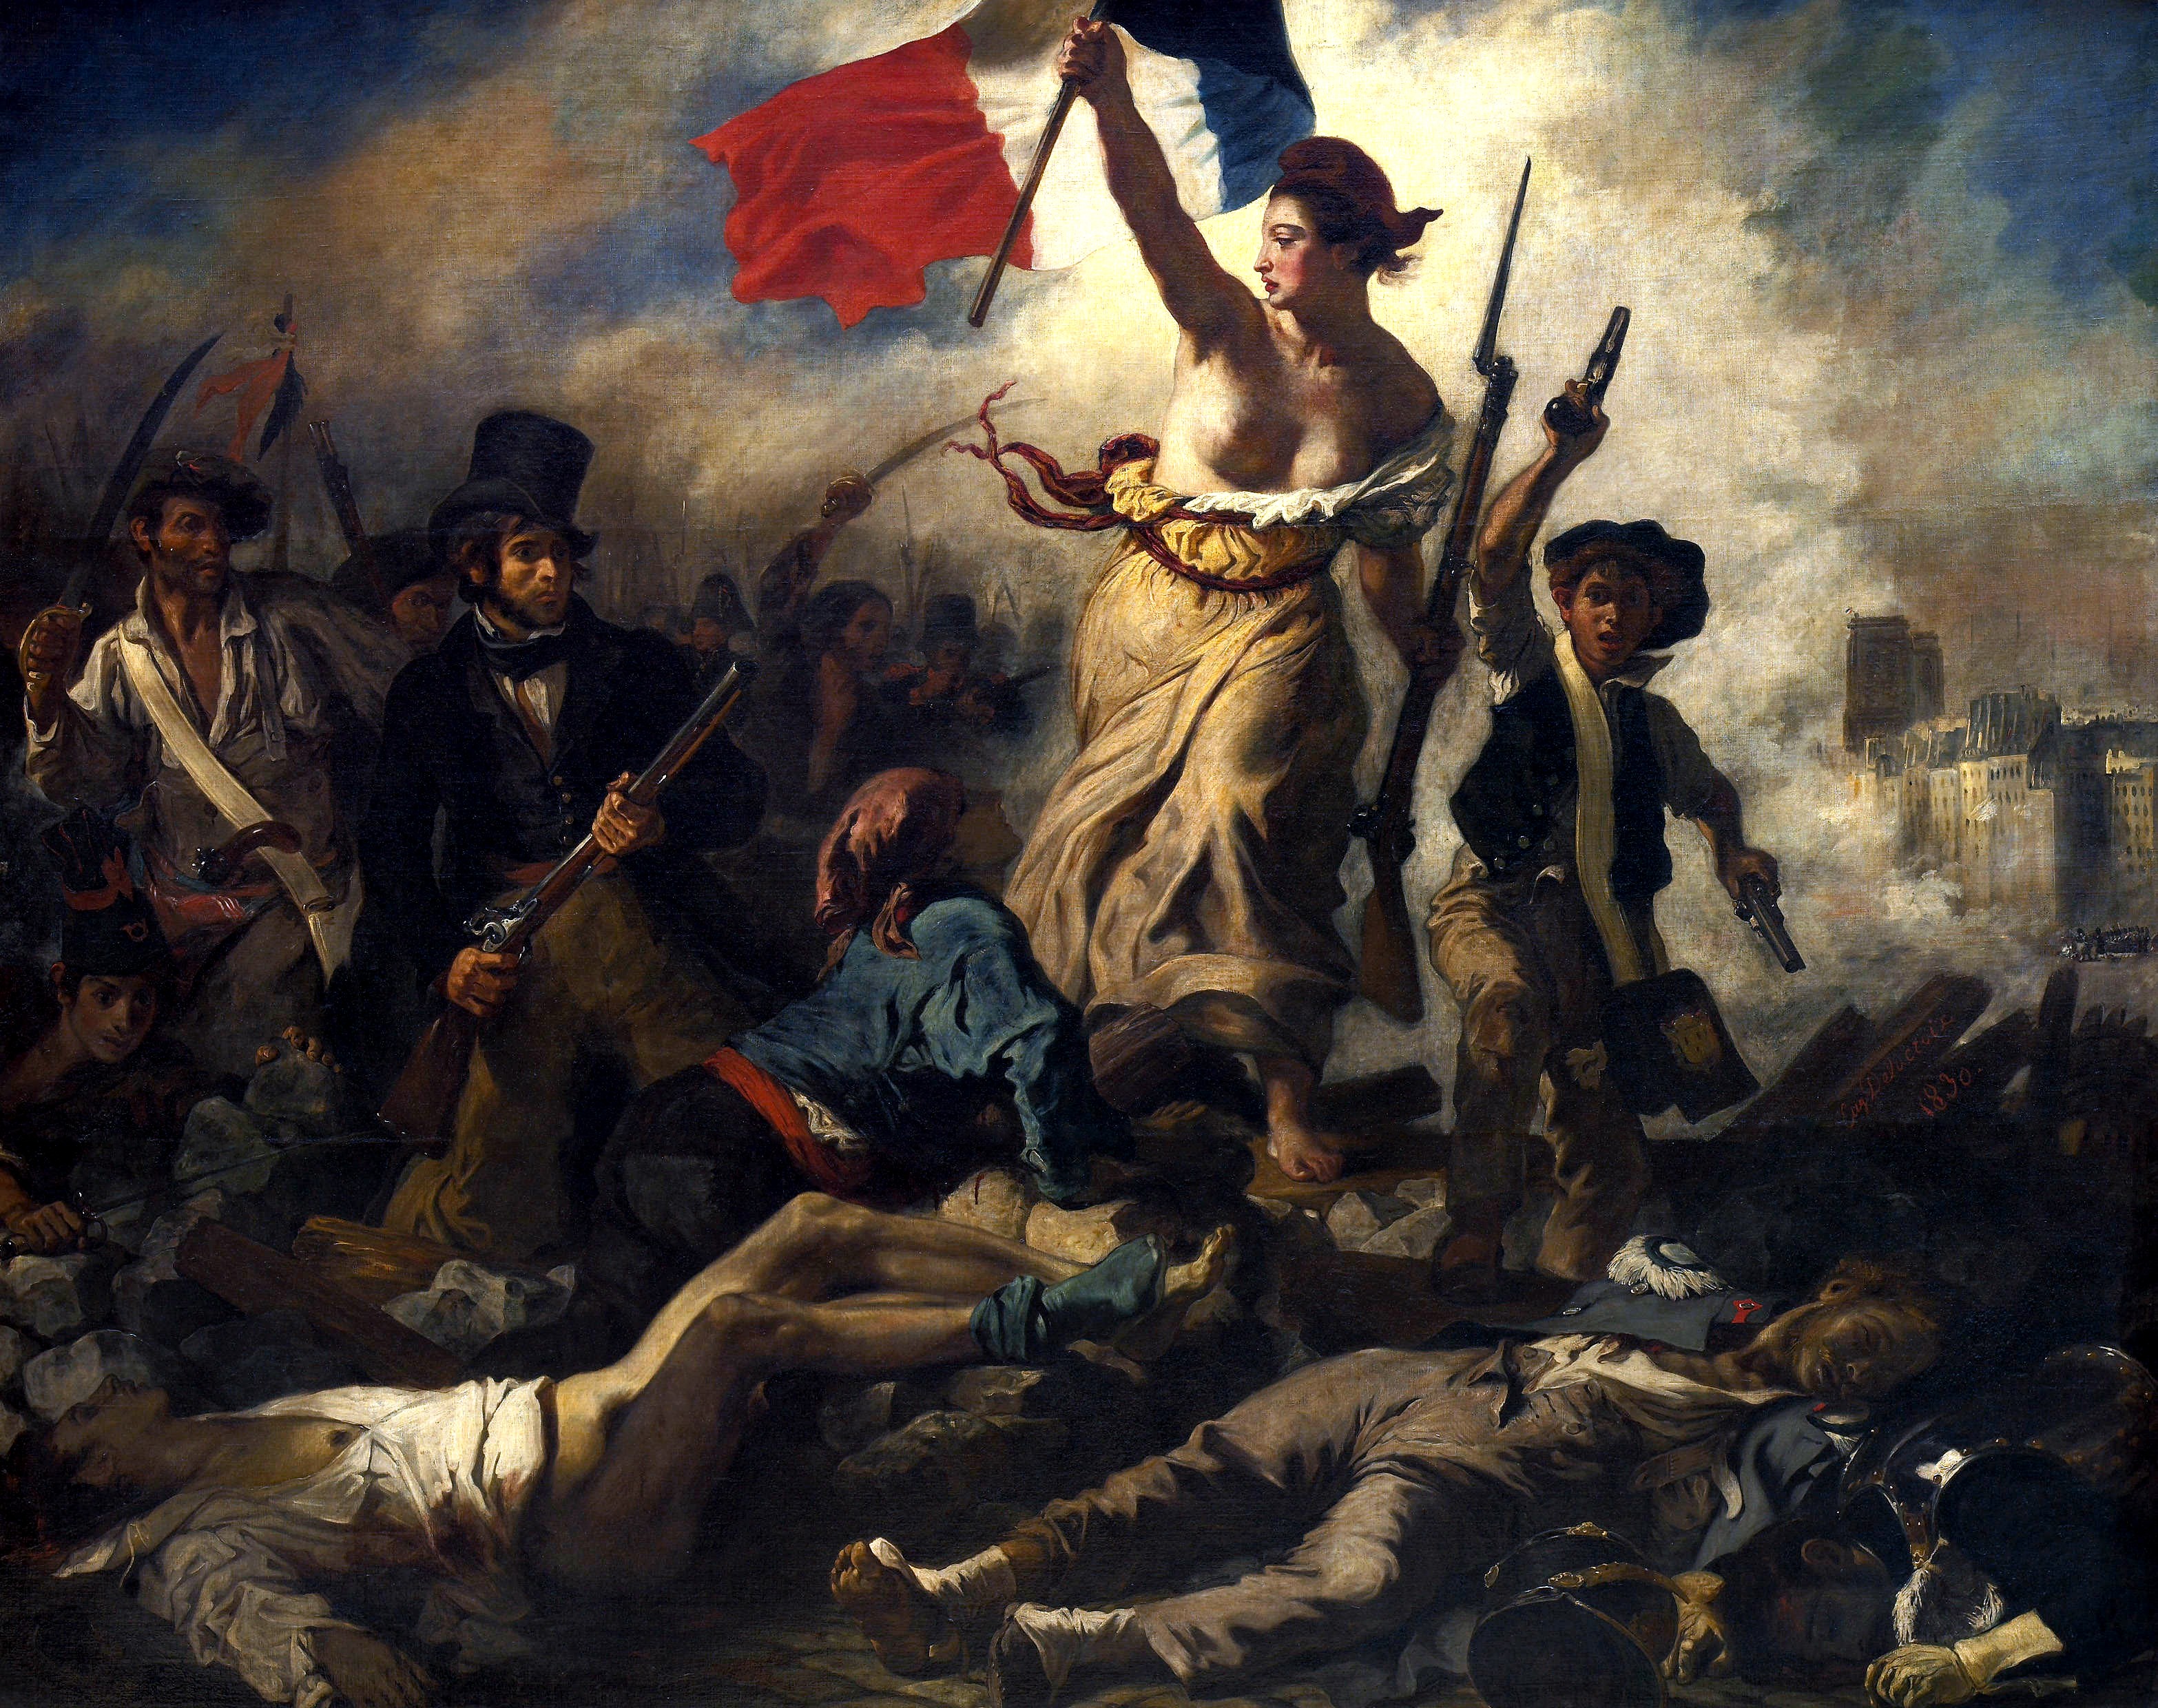 Eugne Delacroix, Liberty Leading the People, 28 July 1830 (1830, Oil on canvas, Louvre Museum, Paris).